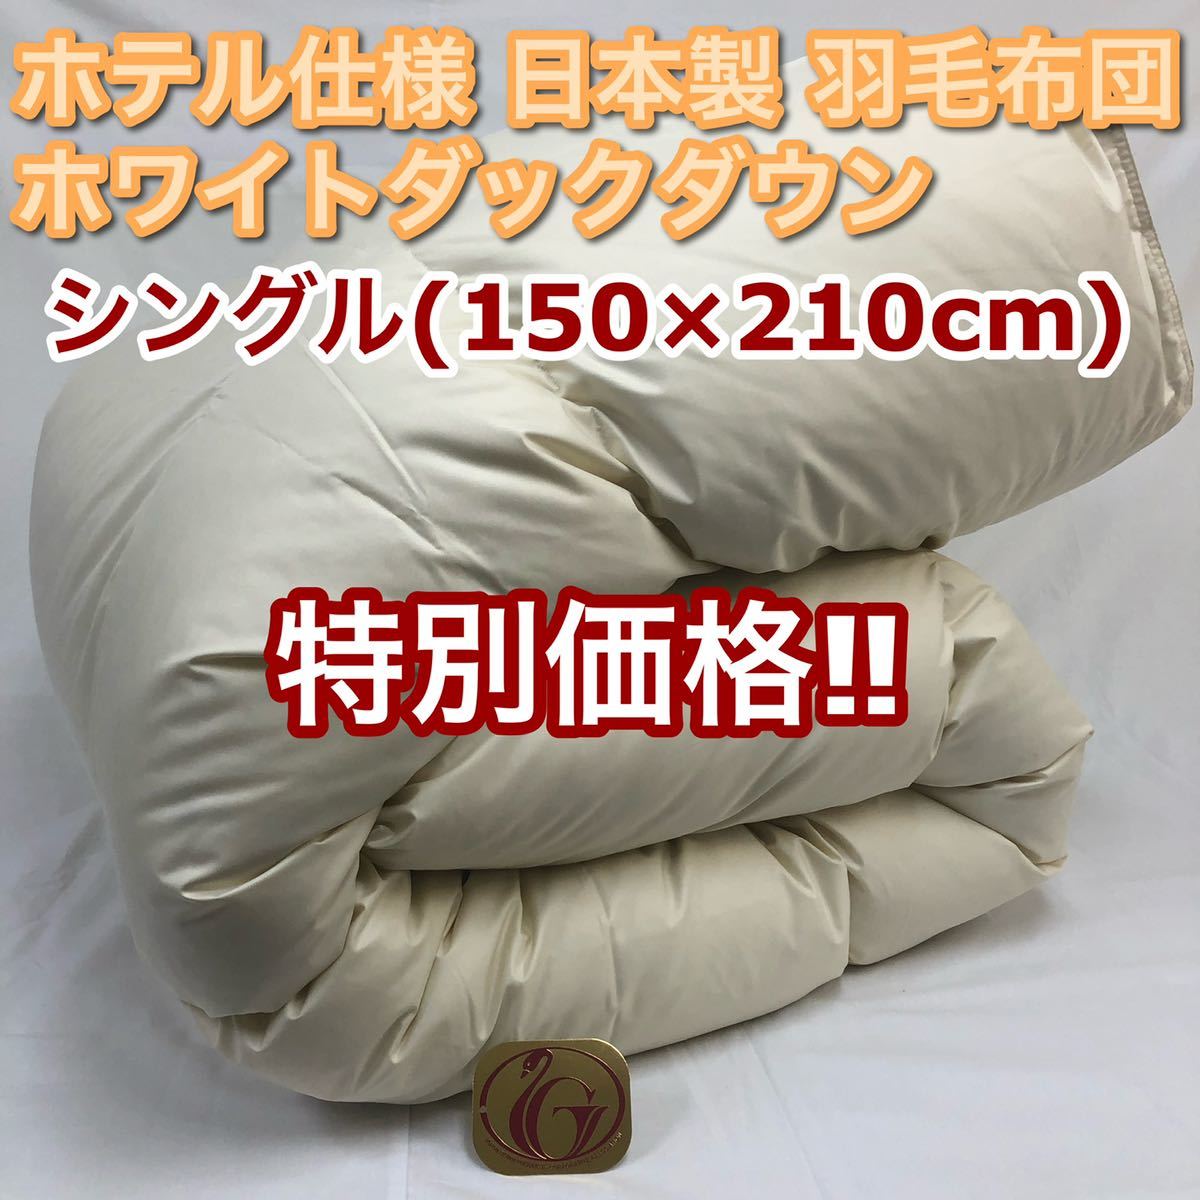 羽毛布団 シングル 抗菌防臭羽毛 きなり 150×210cm 日本製 布団 